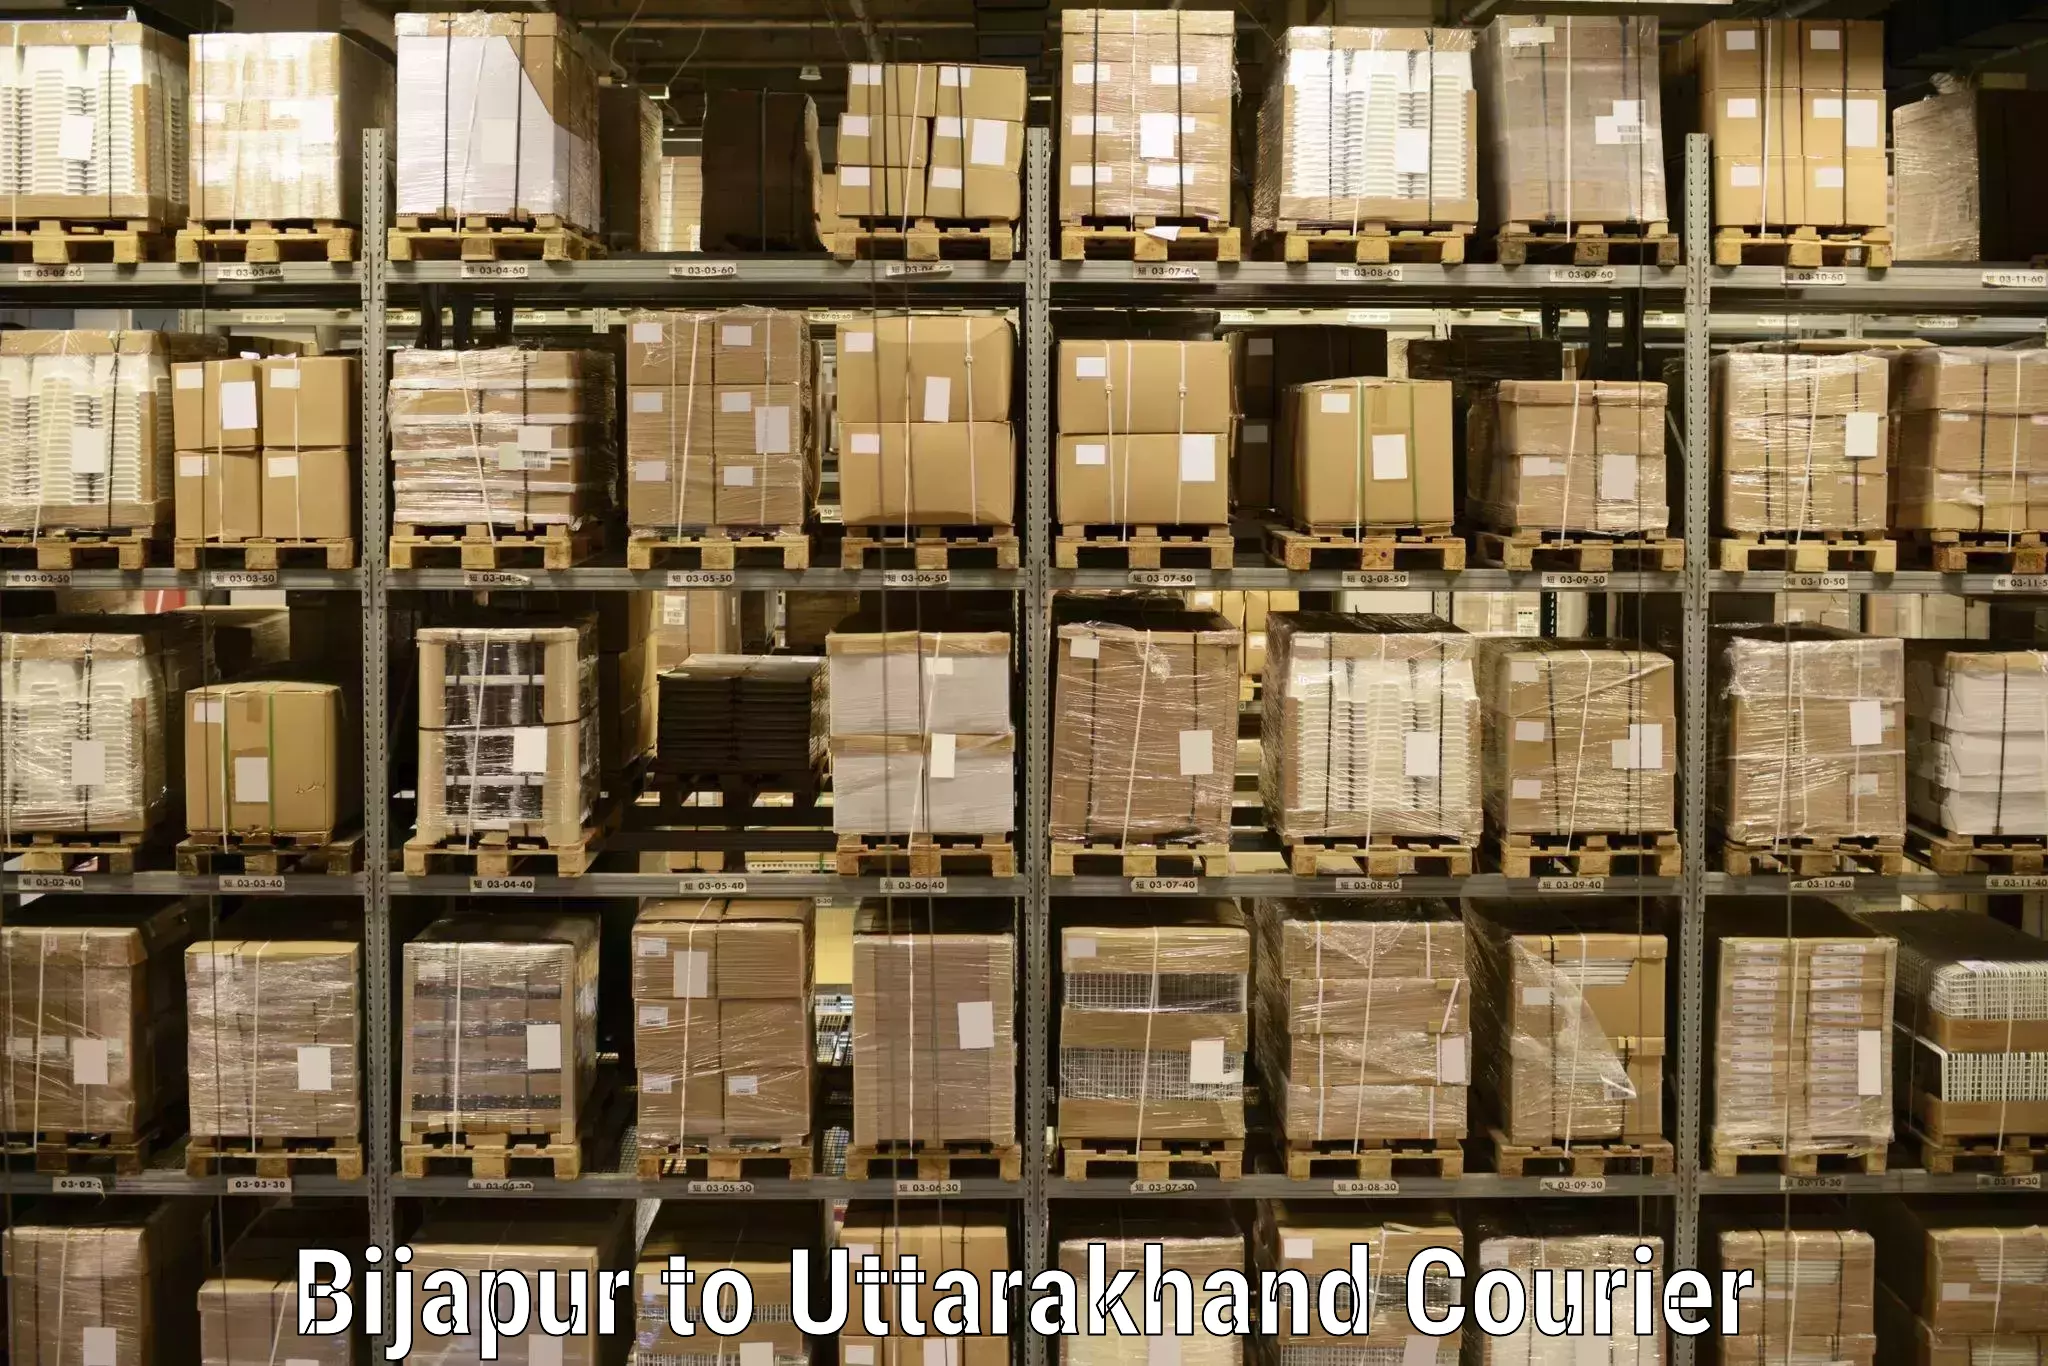 Reliable parcel services Bijapur to Doiwala